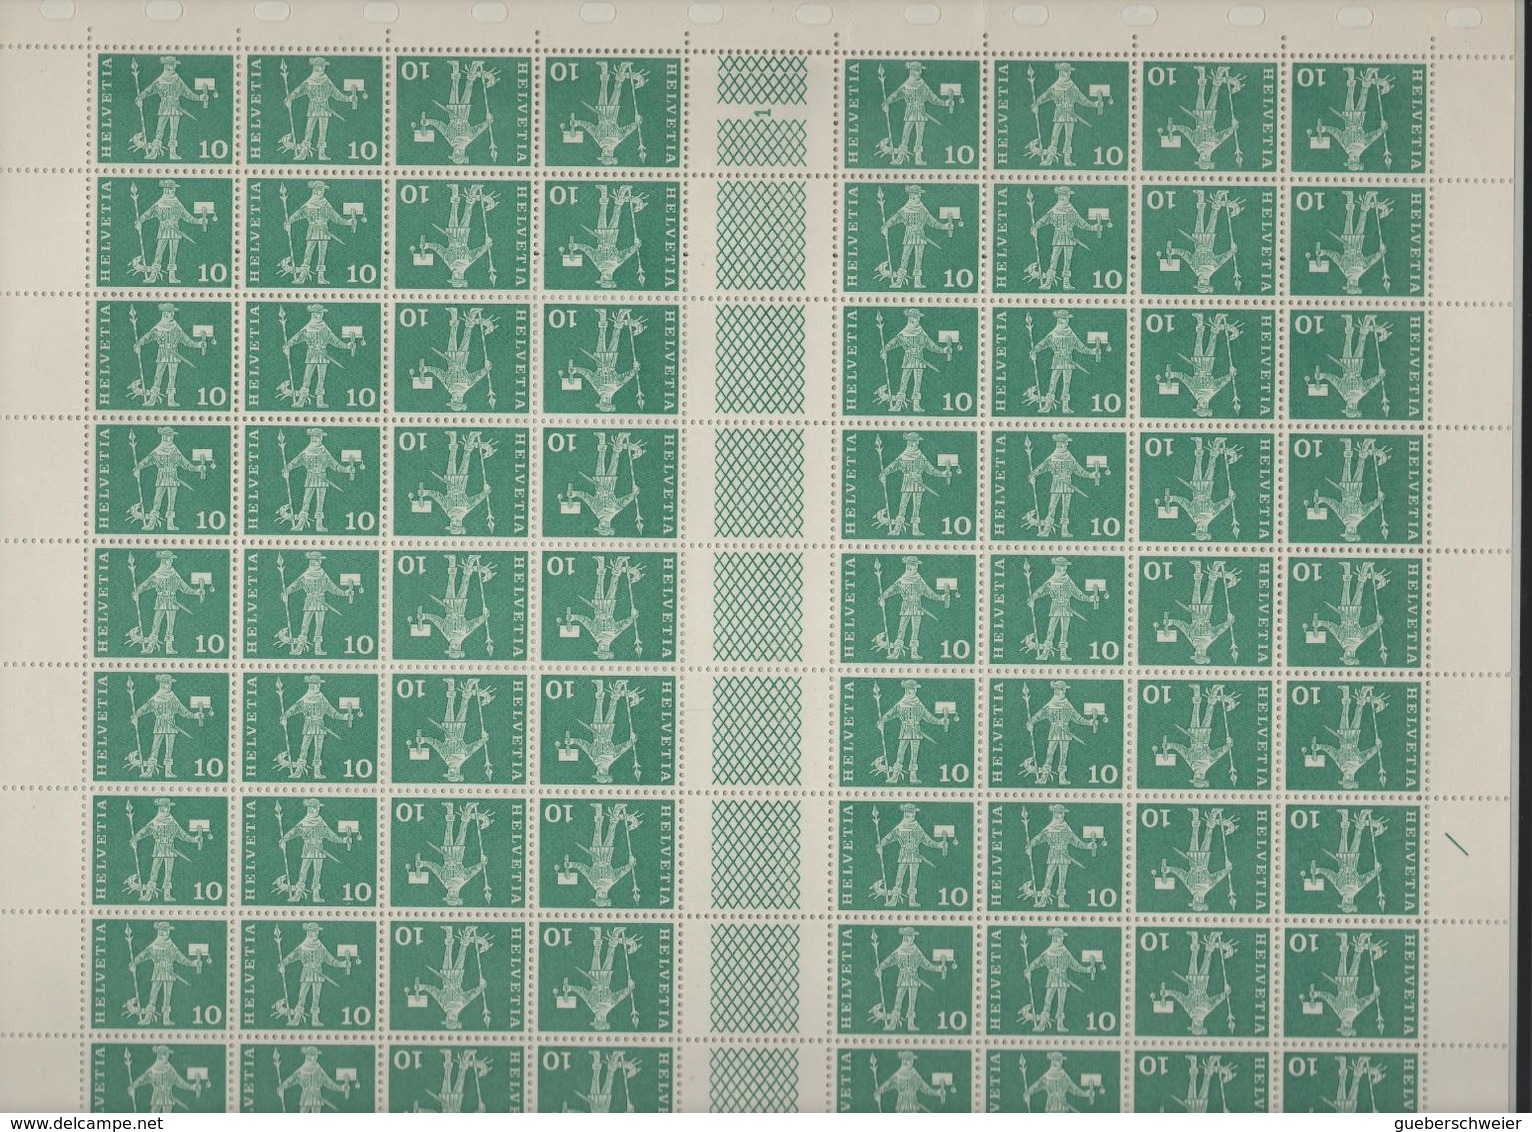 EXCEPTIONNEL Collection de concours "Les Messagers Postaux Suisses 1960/68" sur 52 pages d'album avec classeur + boitier